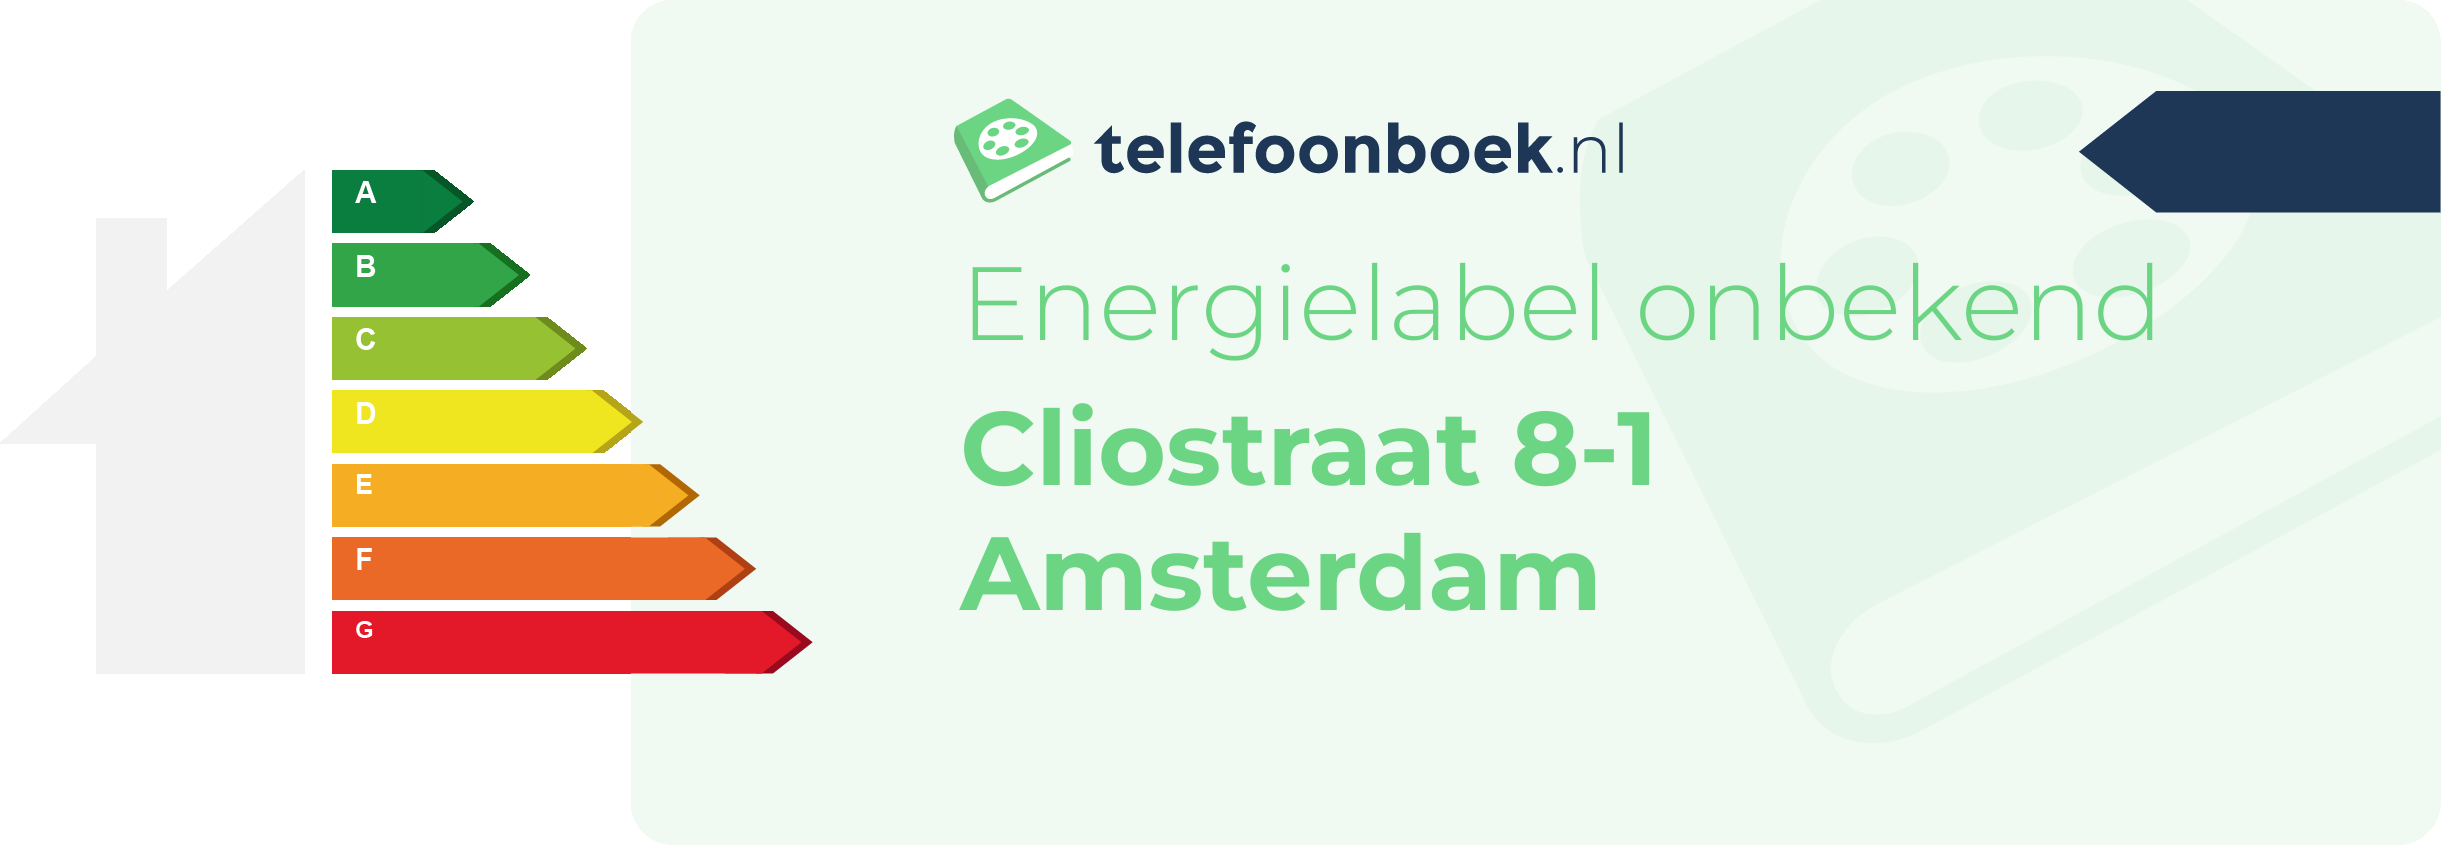 Energielabel Cliostraat 8-1 Amsterdam